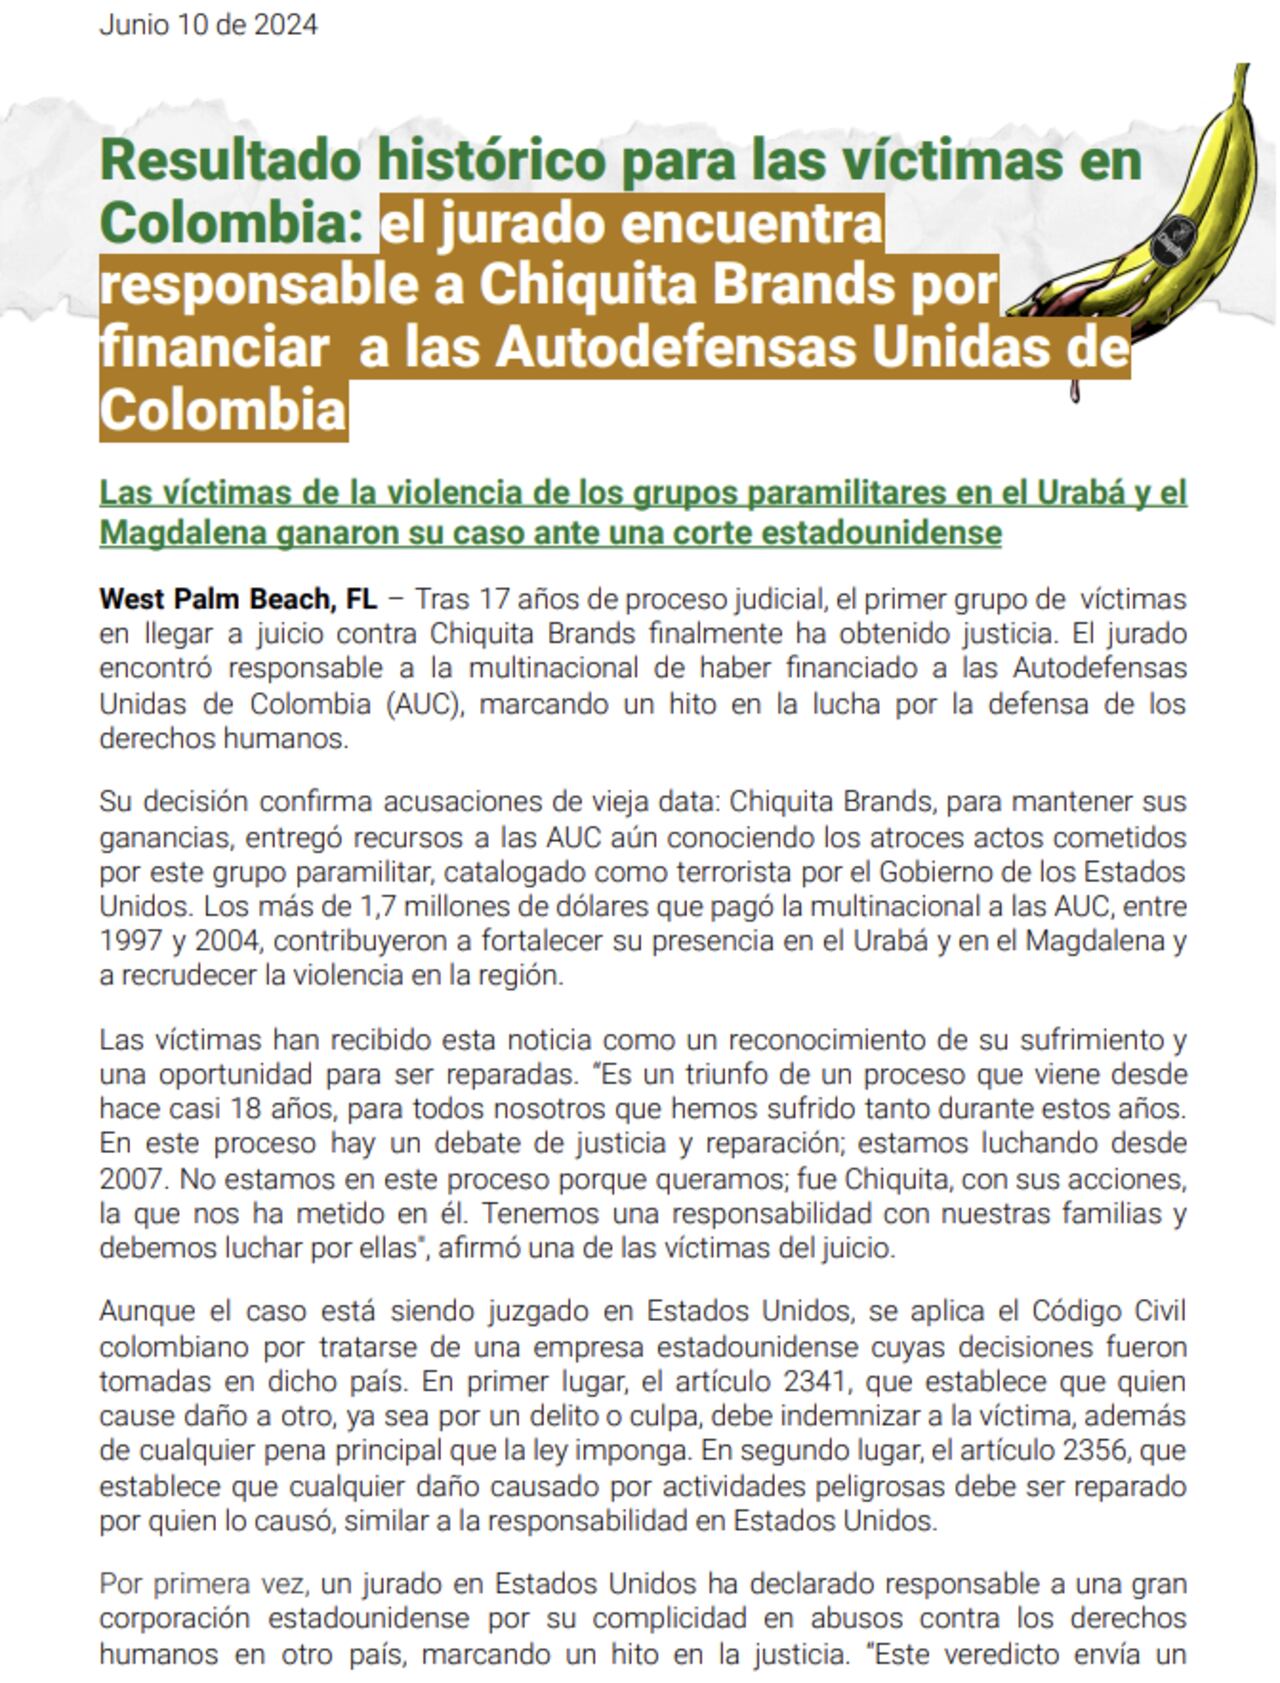 Este es el comunicado con el que EarthRights International (ERI) informó sobre el veredicto de la corte federal de EE.UU., que ordenó a Chiquita Brands a indemnizar a las víctimas de las AUC.